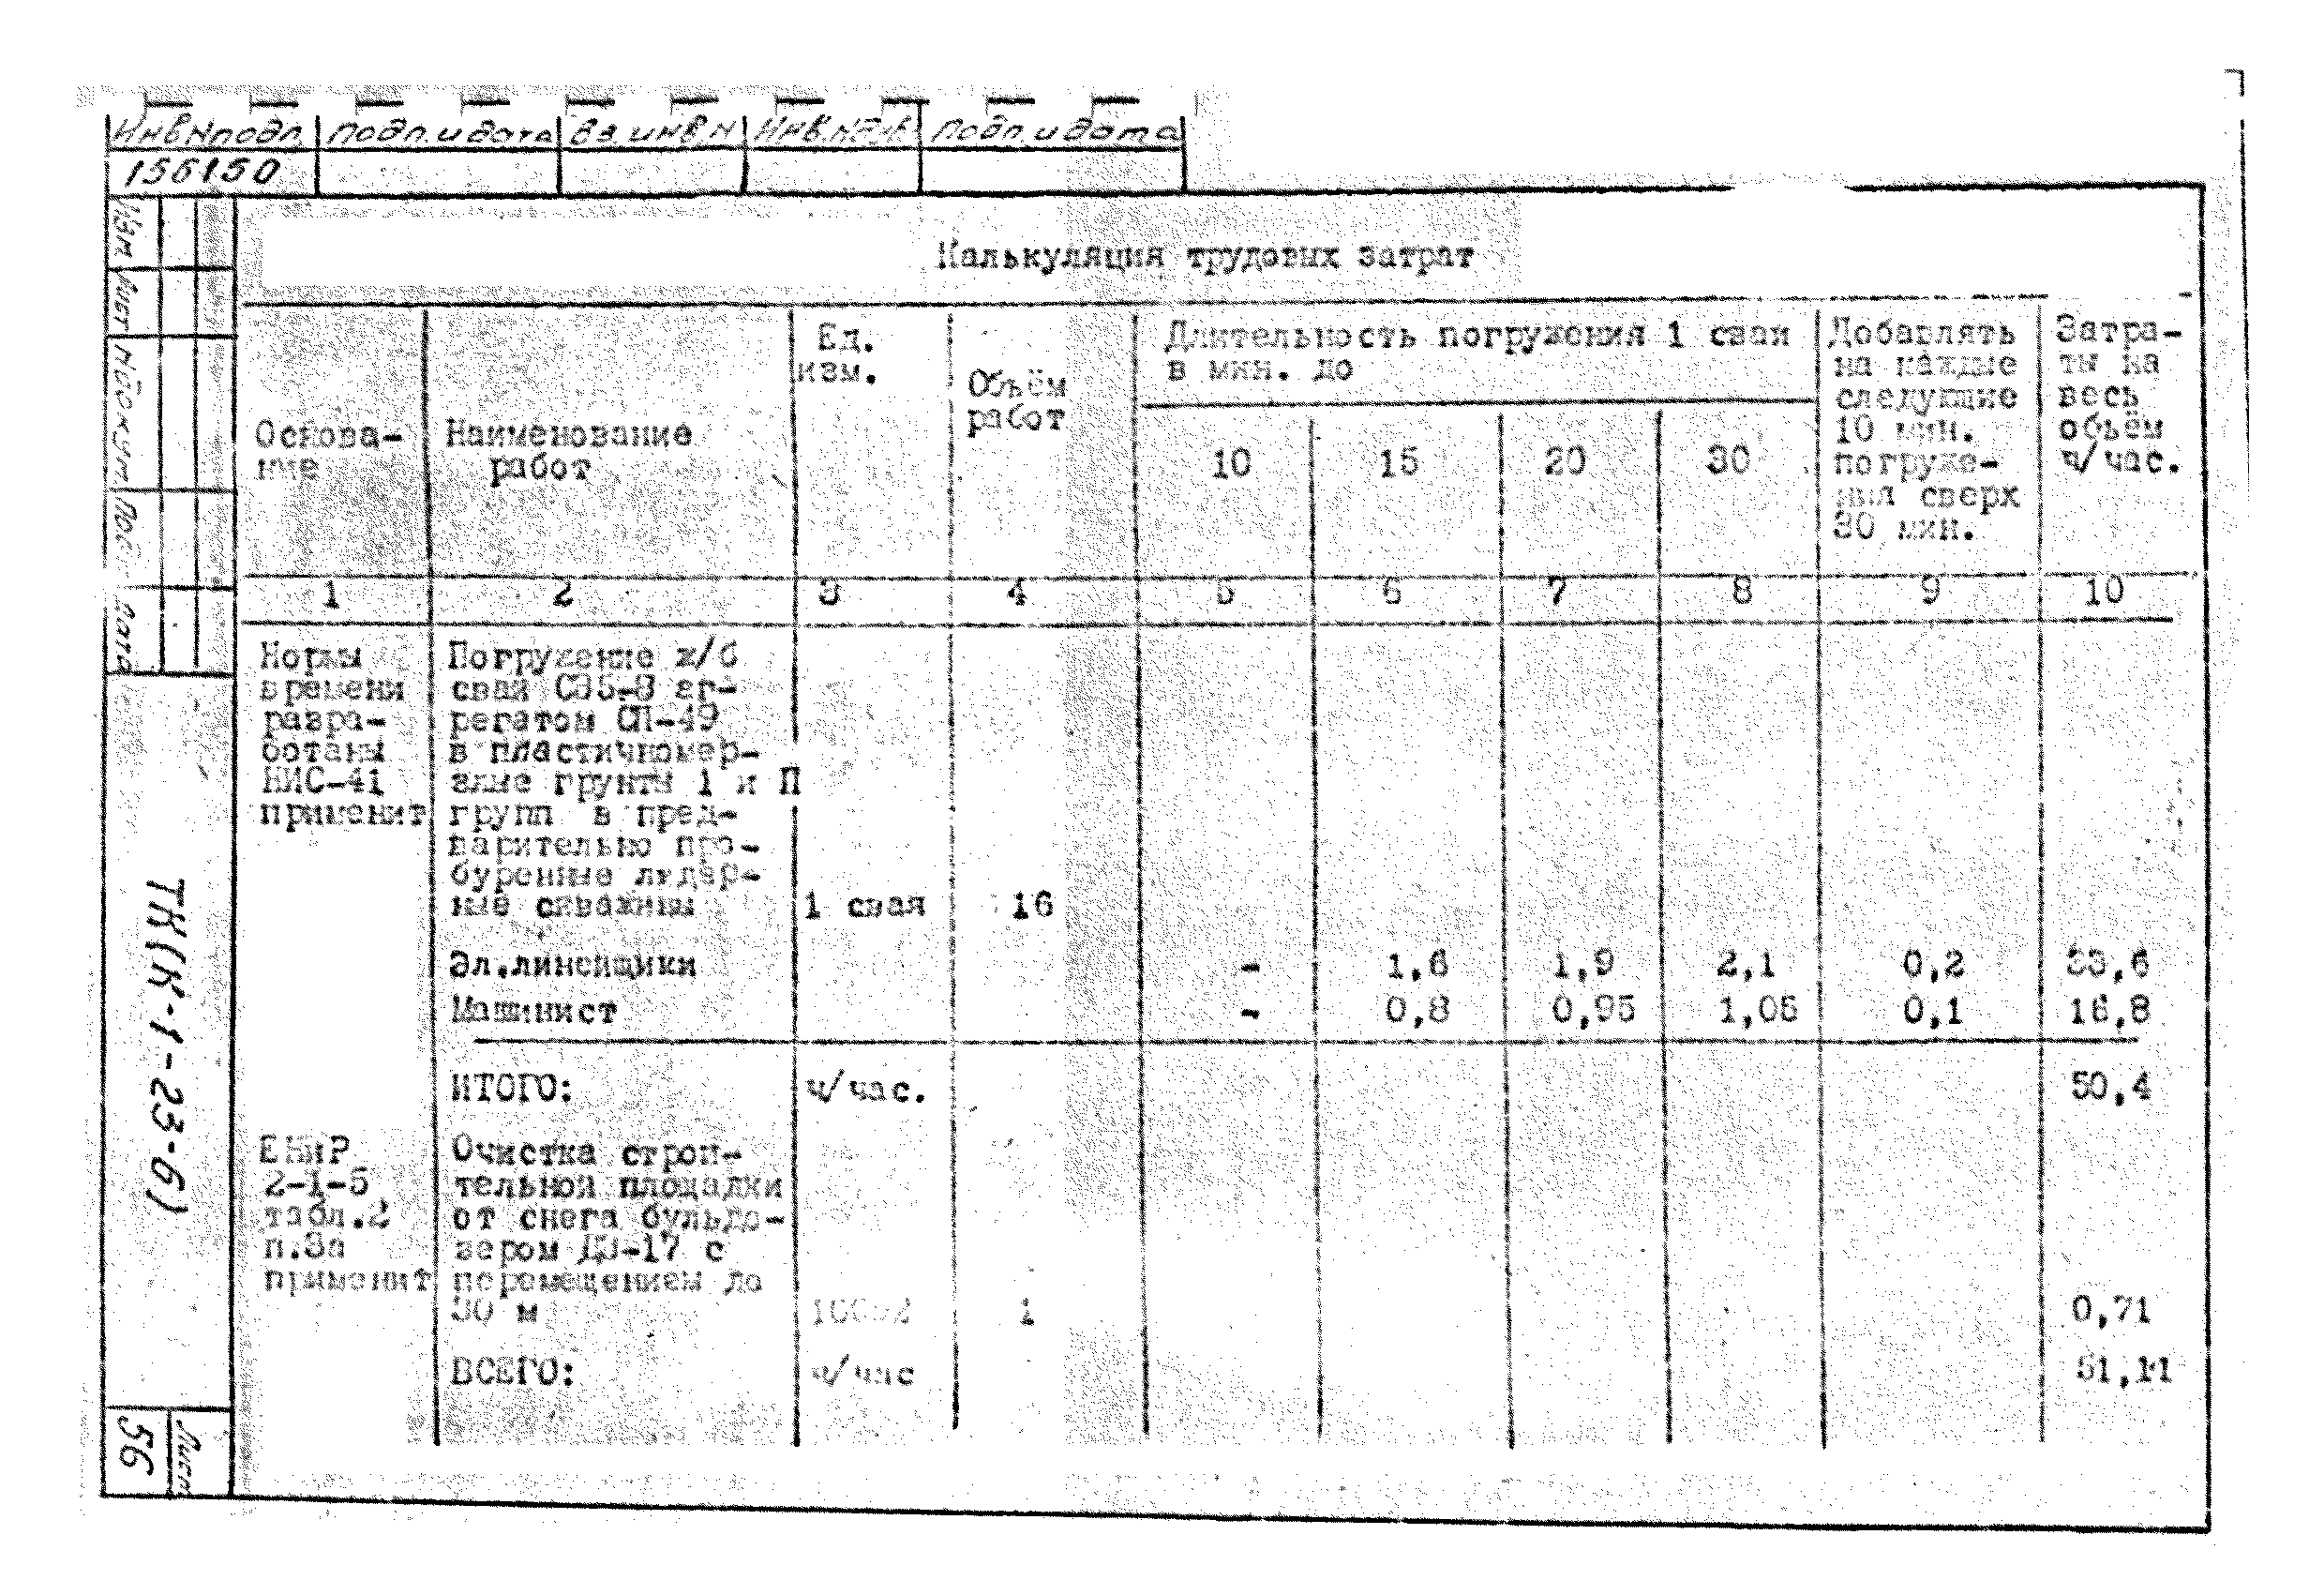 Технологическая карта К-1-23-6